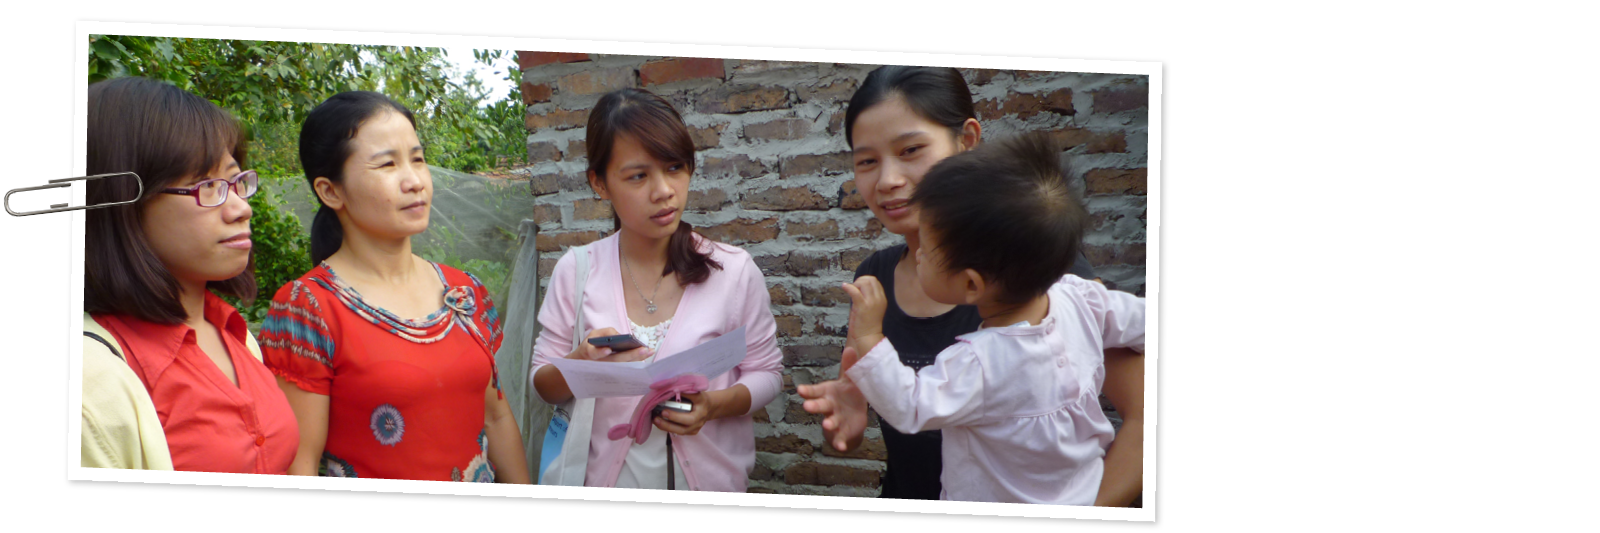 MHIVN-website-foto-vietnam-helpen-ondernemers-vrouwen-019